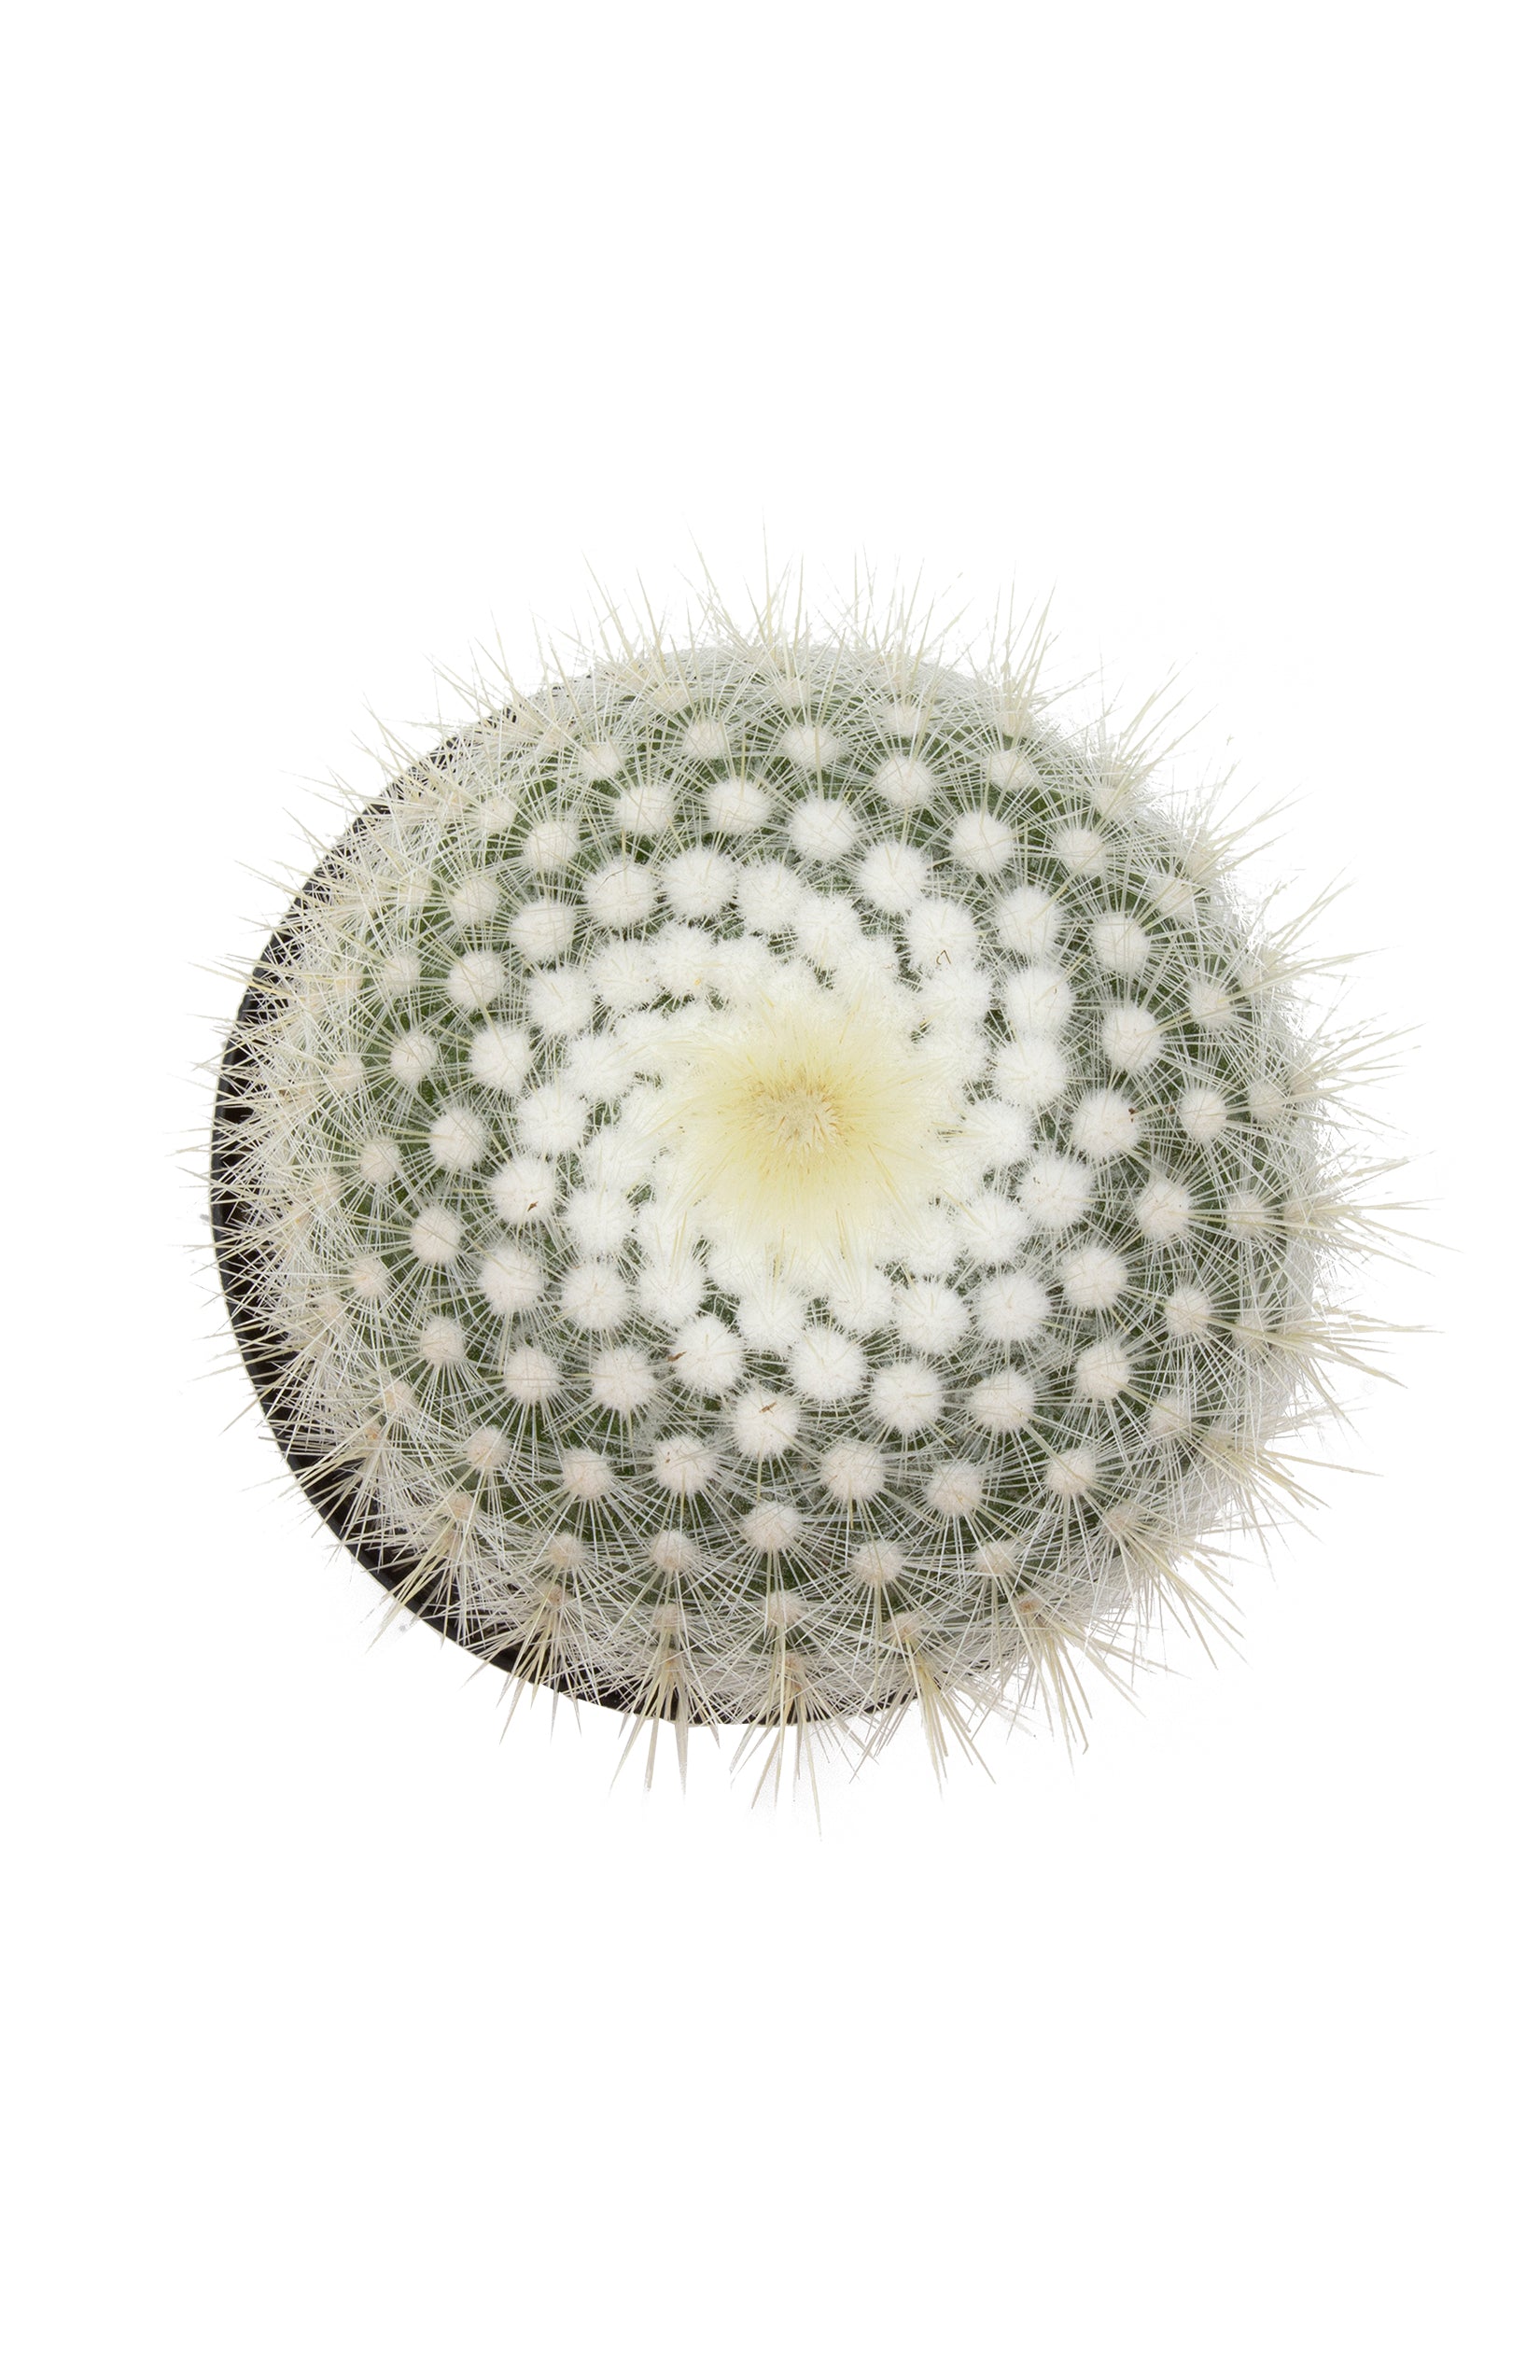 Notocactus scopa "Silver Ball Cactus"